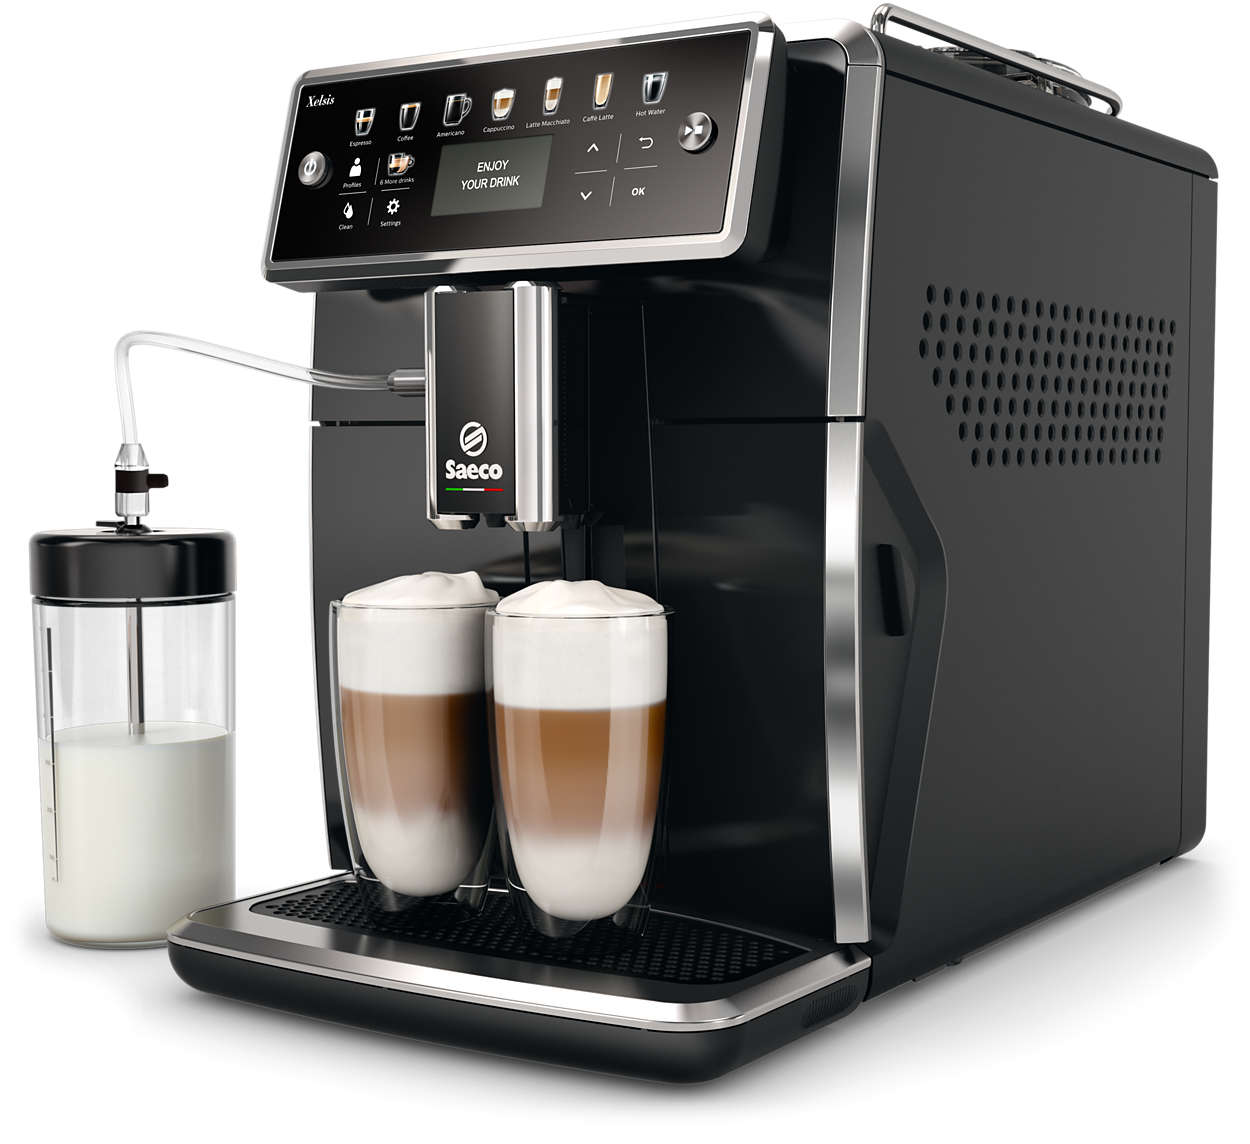 Espressor automat Philips Saeco Xelsis SM7580/00, 15 bari, Latte Perfetto, 12 setări măcinare, 5 setări intensitate,12 băuturi, Filtru AquaClean, 2 ceşti, Recipient lapte 0.6 L, Rezervor apa 1.7 L, Opţiune cafea măcinată, Negru lucios